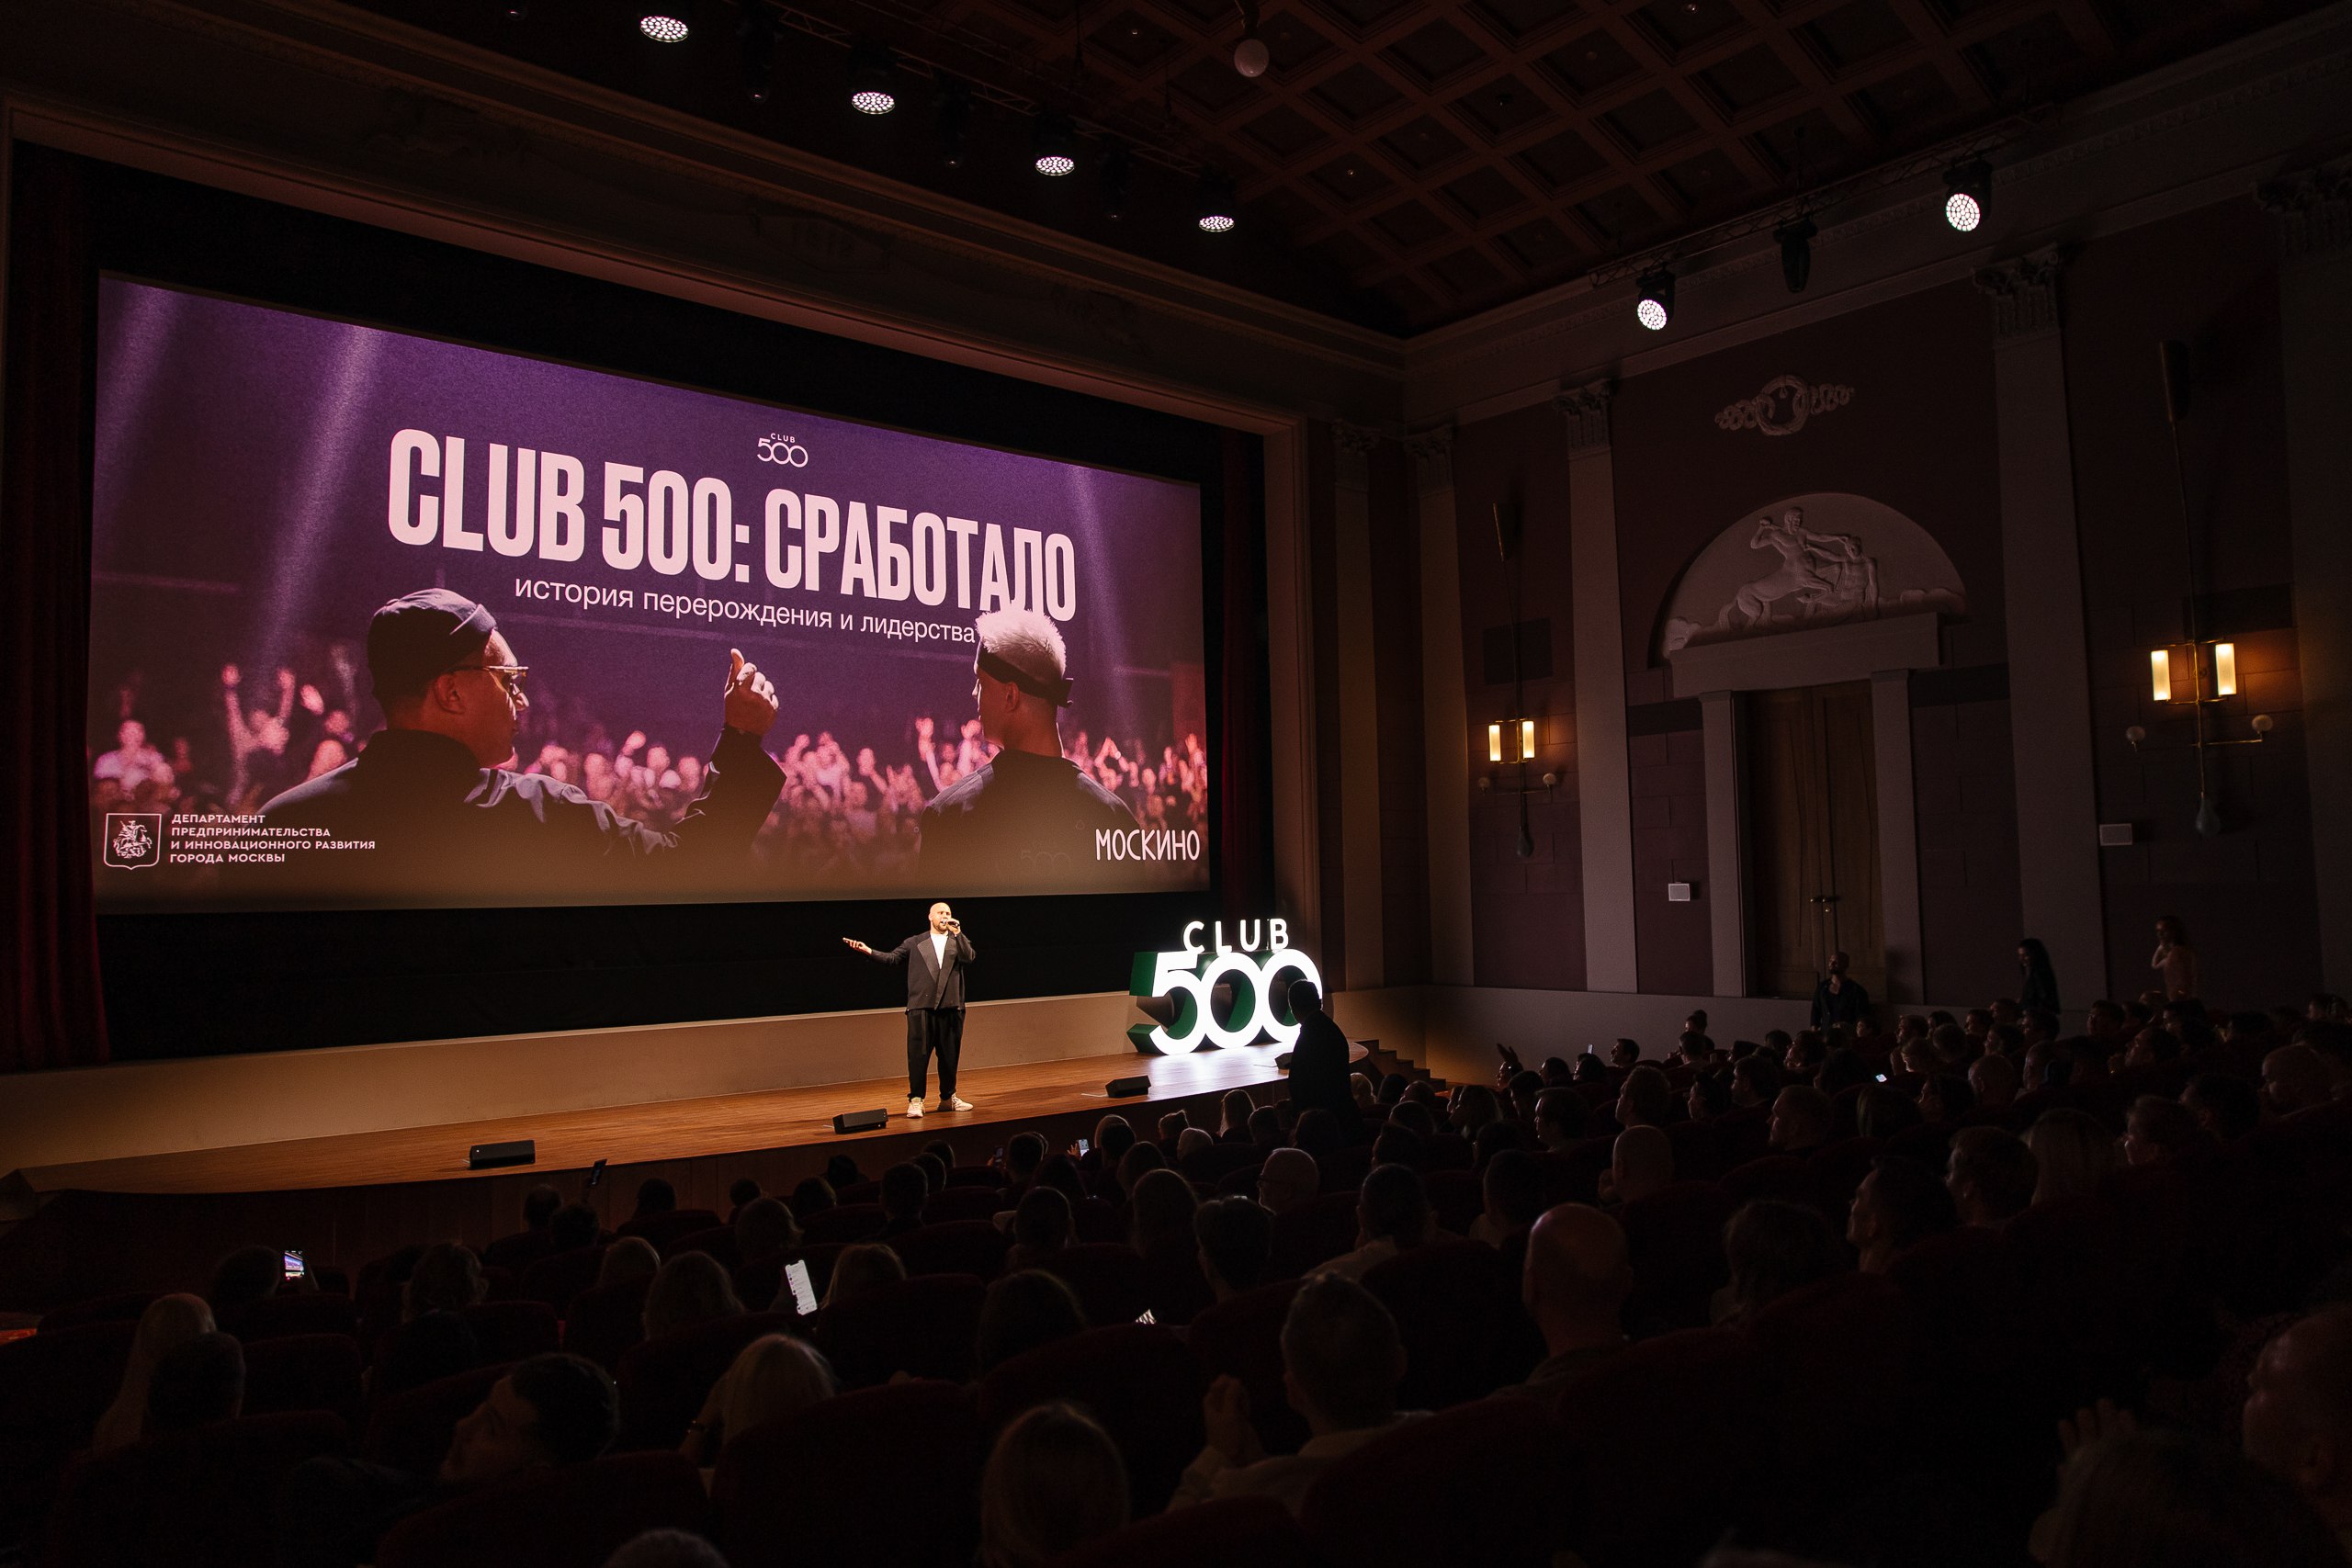 фото: Становление крупнейшего бизнес-клуба страны Club 500 показали на большом экране